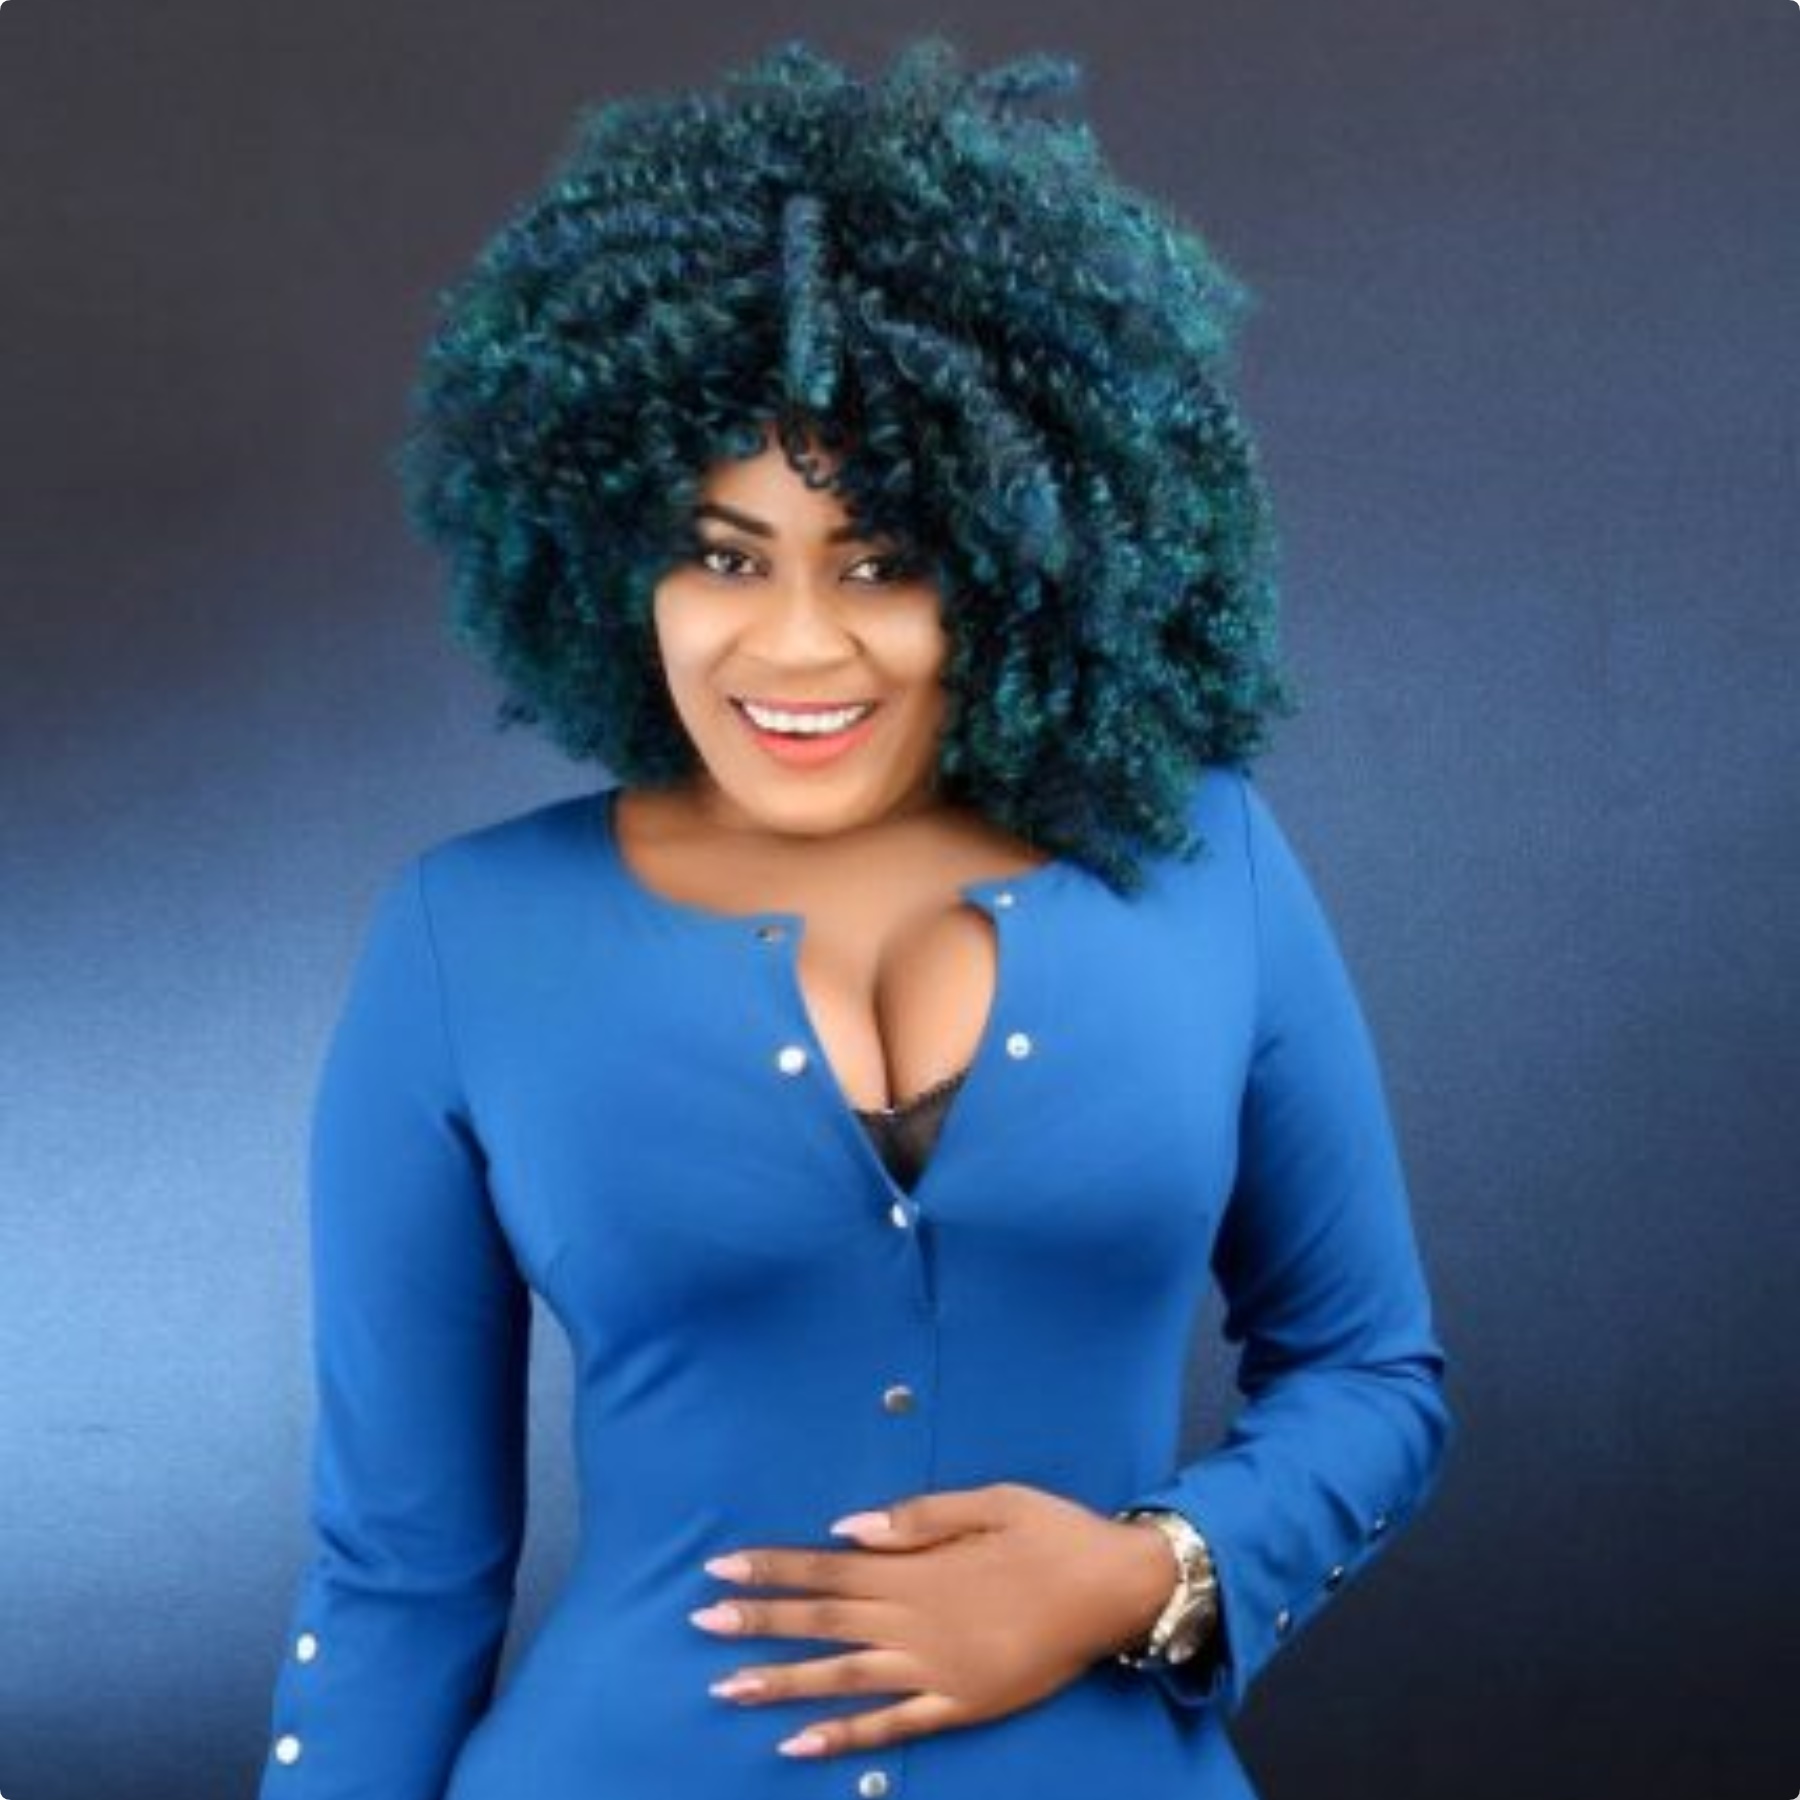 I have aborted Ernest Opoku's pregnancy - Nayas